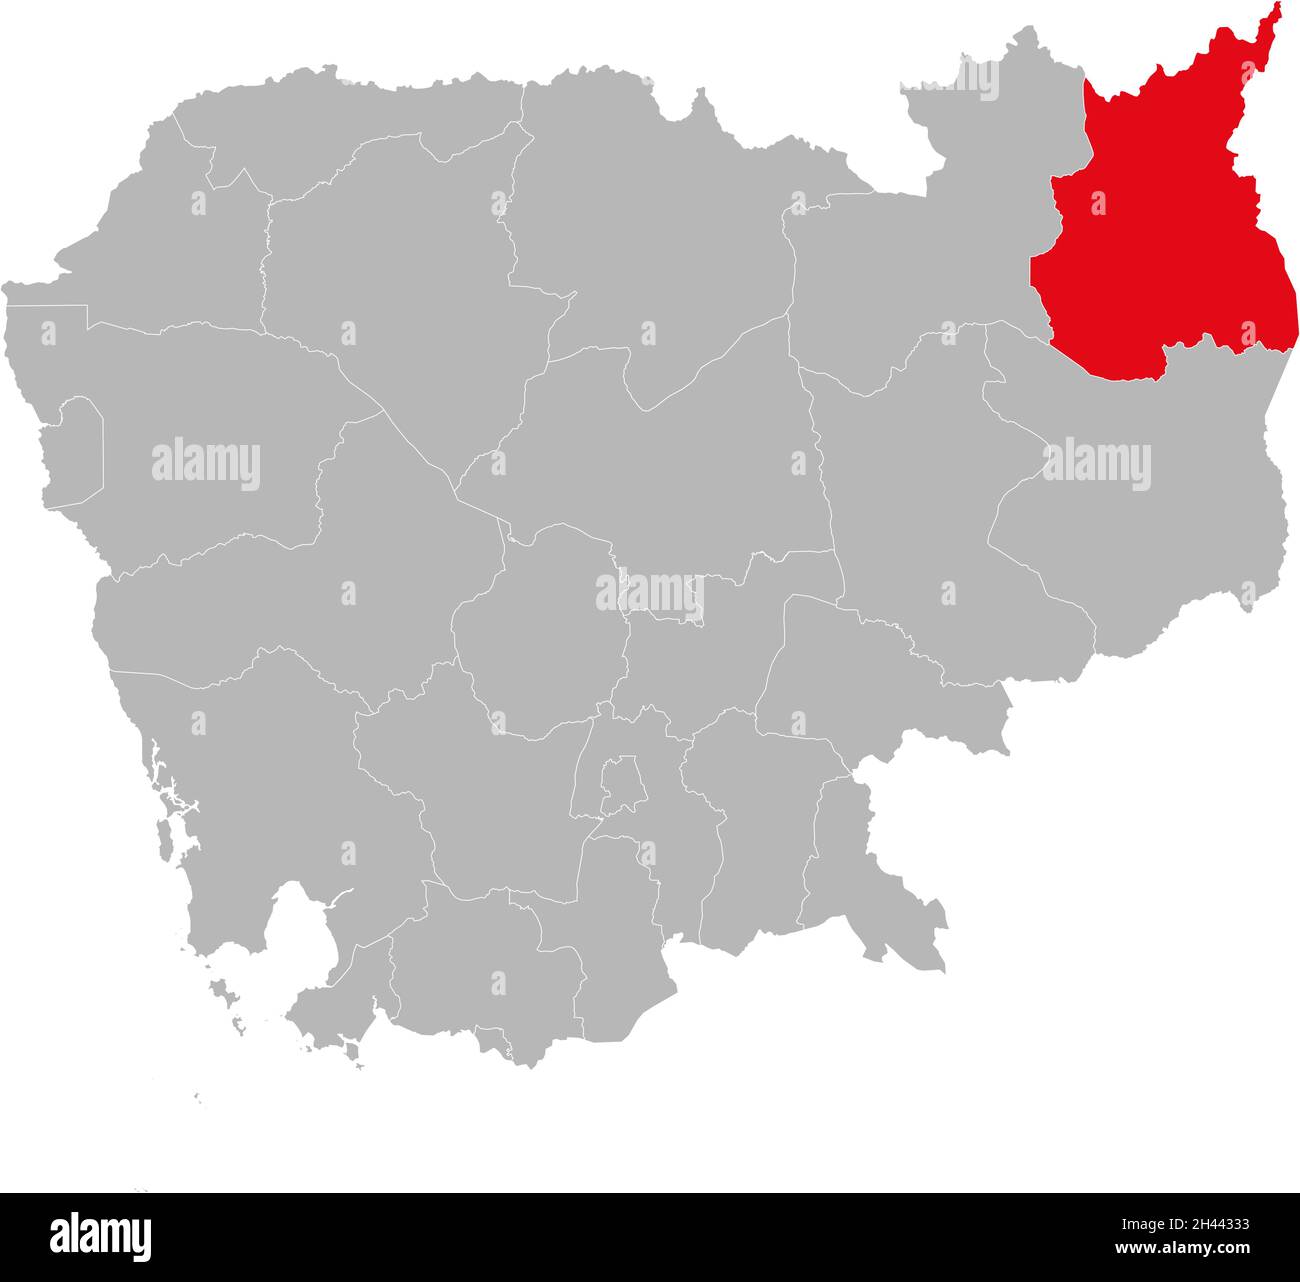 Provinz Ratanakiri isolierte kambodscha-Karte. Grauer Hintergrund. Geschäftskonzepte und -Hintergründe. Stock Vektor